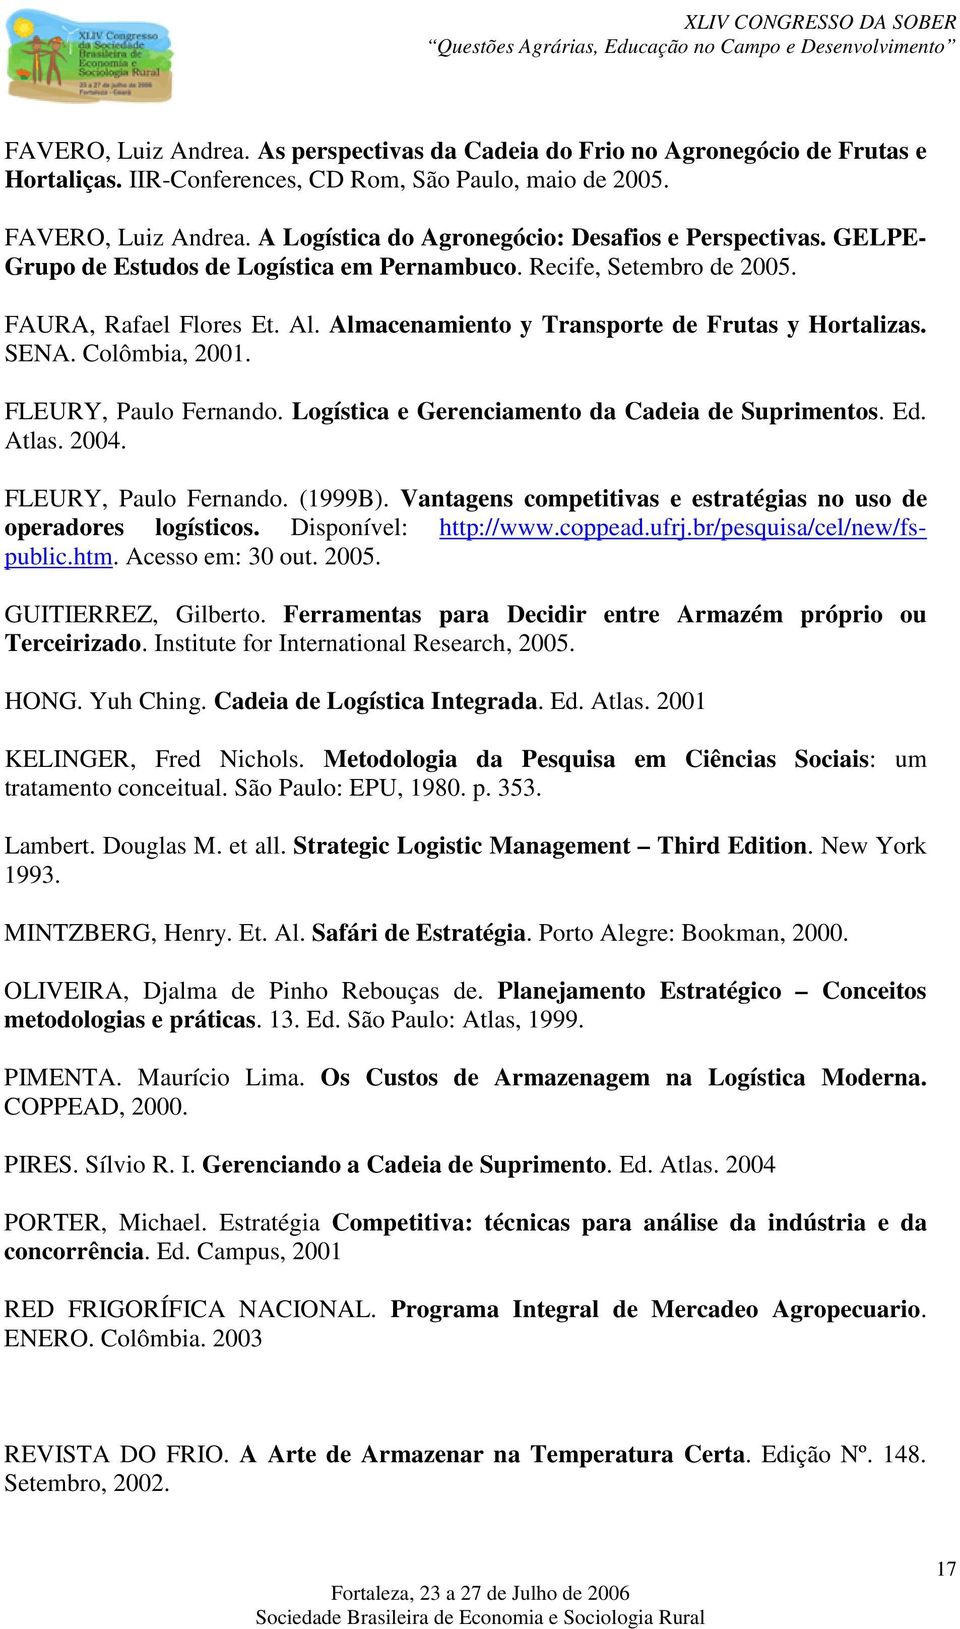 Almacenamiento y Transporte de Frutas y Hortalizas. SENA. Colômbia, 2001. FLEURY, Paulo Fernando. Logística e Gerenciamento da Cadeia de Suprimentos. Ed. Atlas. 2004. FLEURY, Paulo Fernando. (1999B).